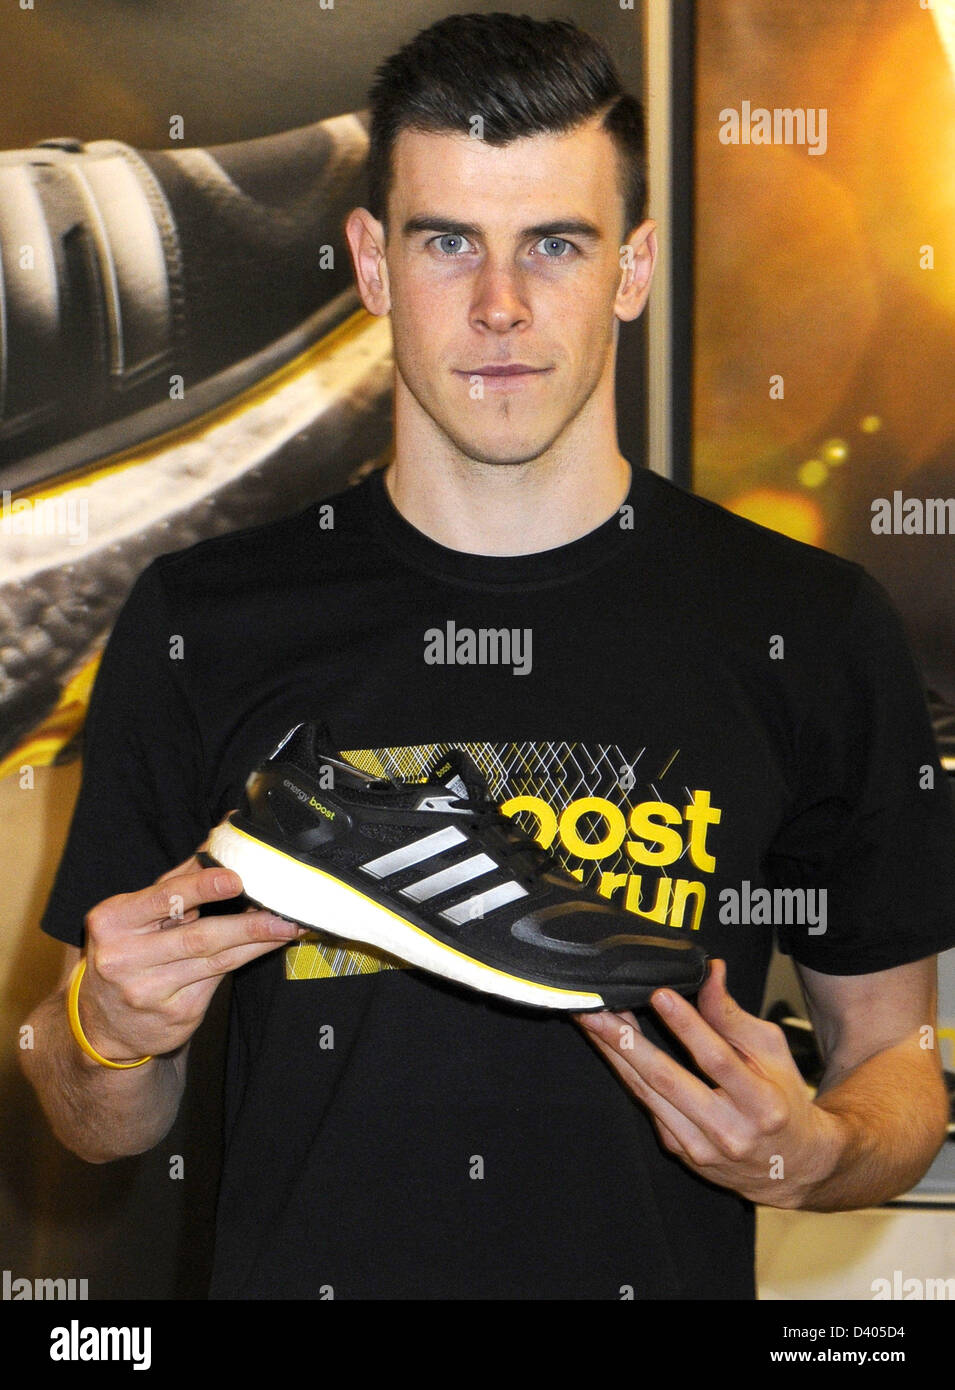 Londres, Reino Unido. 27 2013. Tottenham Hotspur futbolista Gareth Bale cumple fans en una firma en la tienda adidas, Oxford Street. Londres para promocionar Adidas aumentar la experiencia. Fardo es